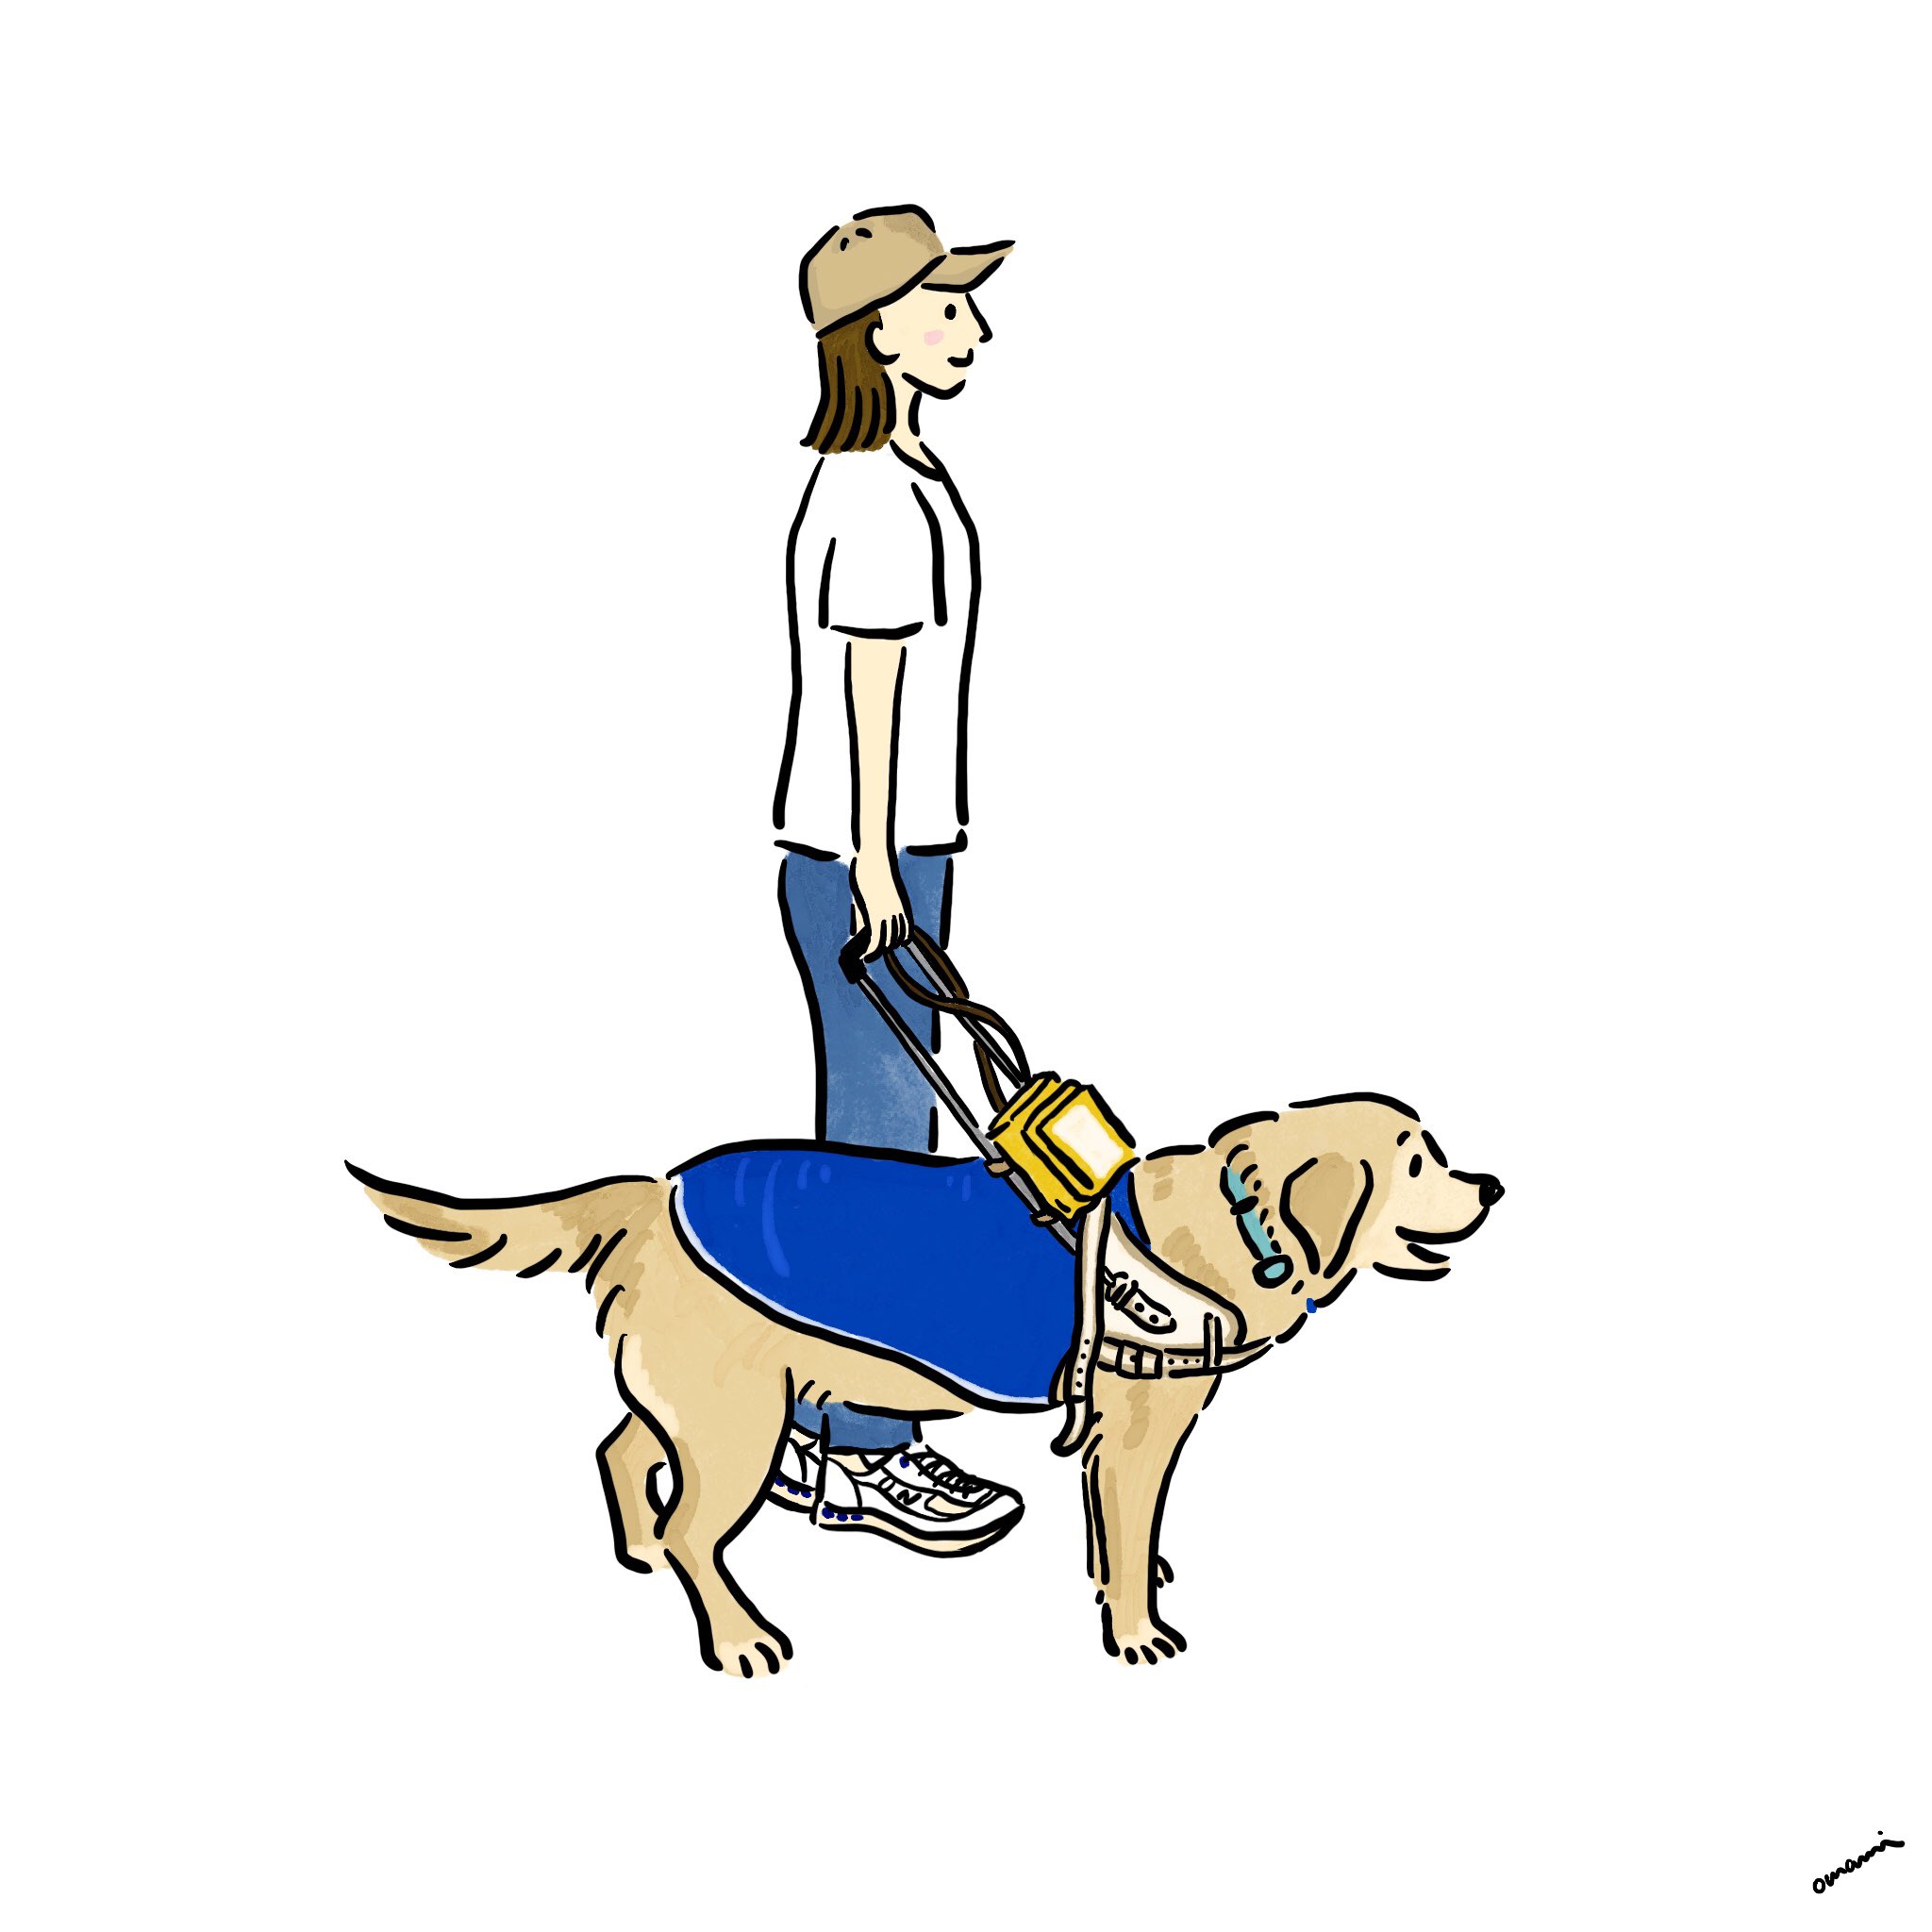 Twitter 上的 Omami 犬専門イラストレーター 盲導犬の訓練 すごい かしこい ありがとう 訓練士さんと楽しそうに訓練している姿に感動 感謝 盲導犬 補助犬 日本盲導犬協会 盲導犬総合支援センター ラブラドール イラスト イラストレーター 犬好きな人と